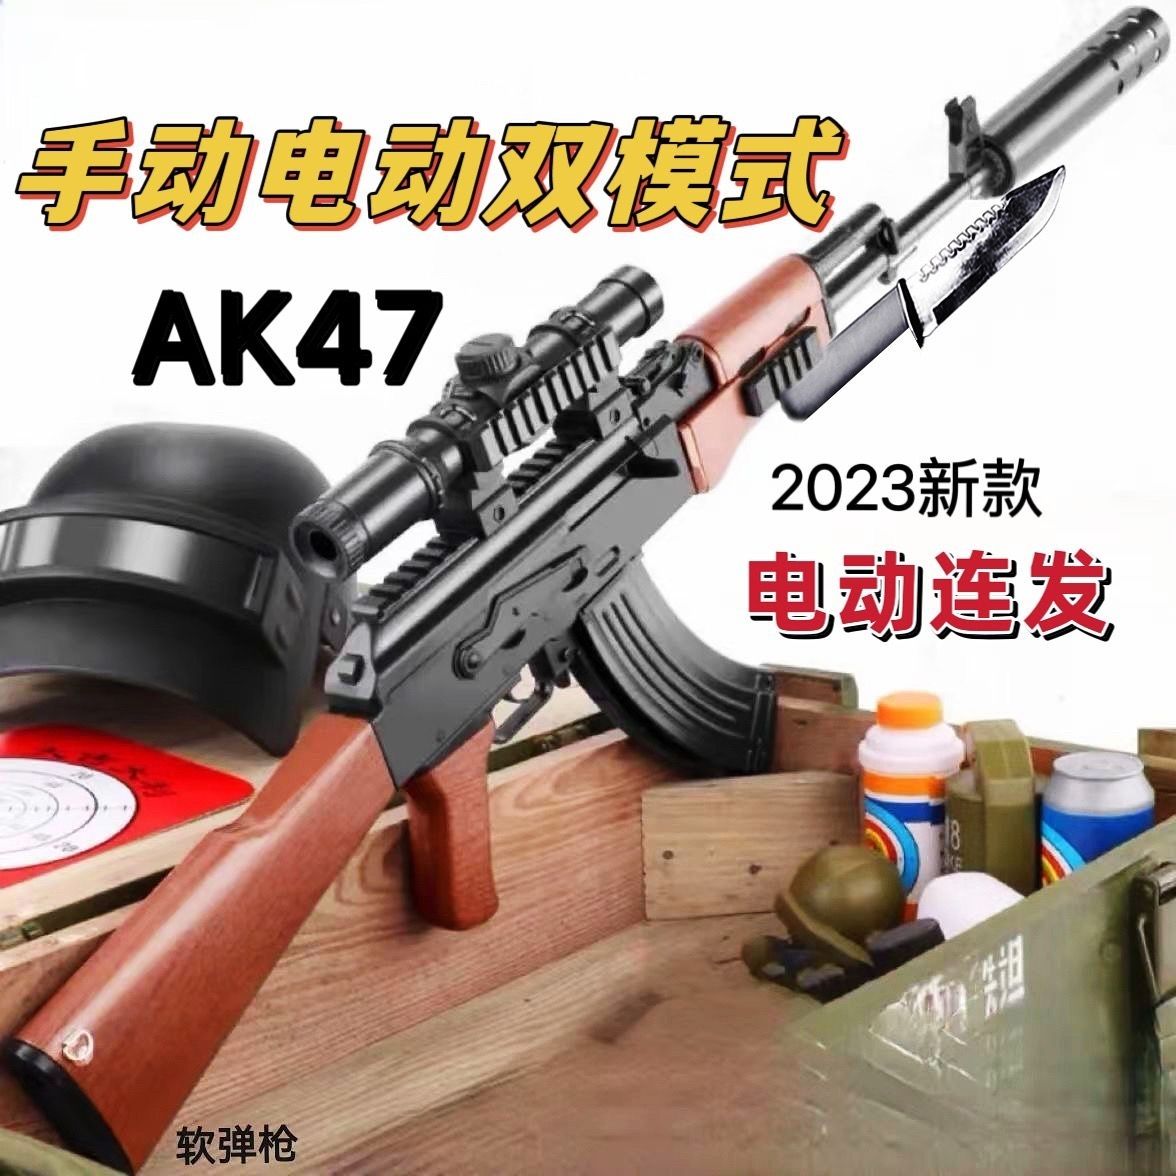 【免運】可開發票 玩具槍 軟彈槍 AK47突擊沖鋒手自一體兒童軟彈槍M416電動連發兒童玩具槍模型禮物